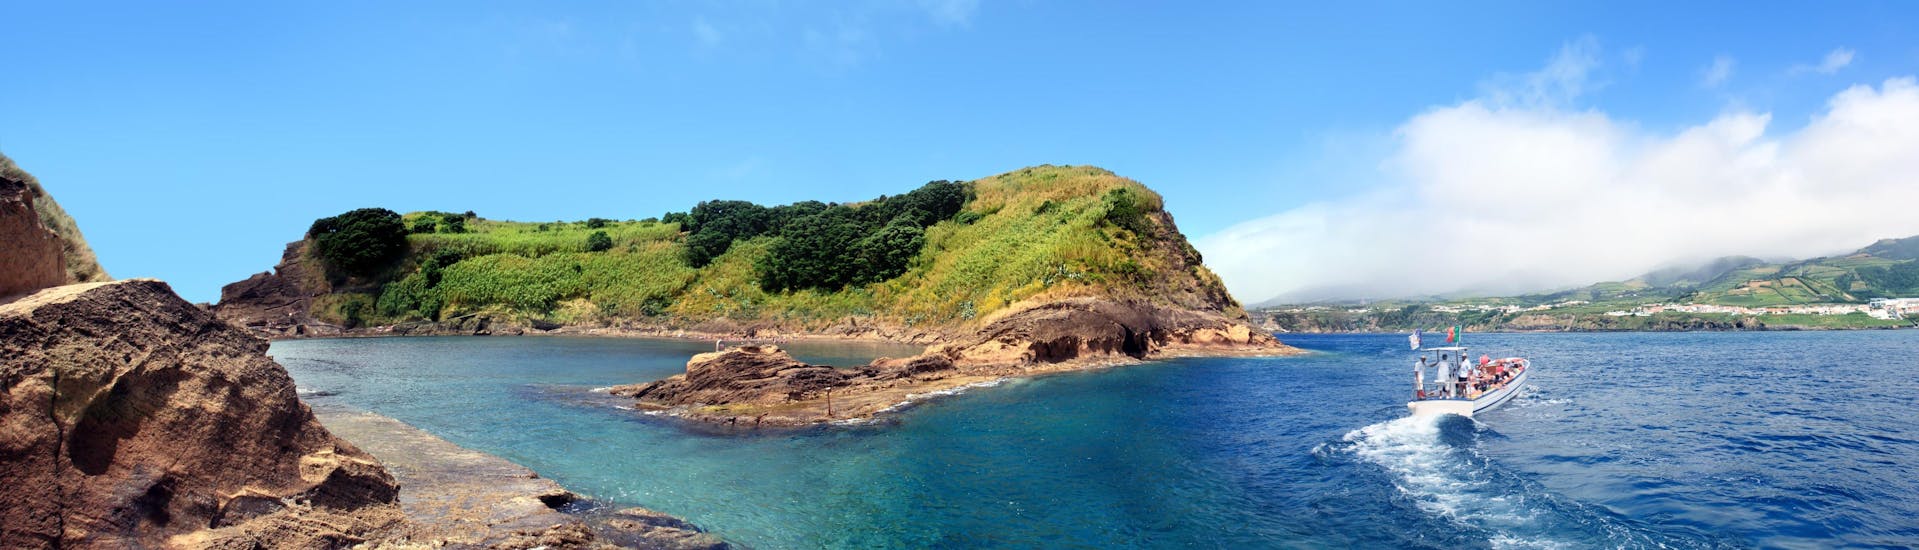 Blick auf die kleine Insel Vila Franca do Campo, ein beliebtes Ziel für Bootsausflüge auf den Azoren.